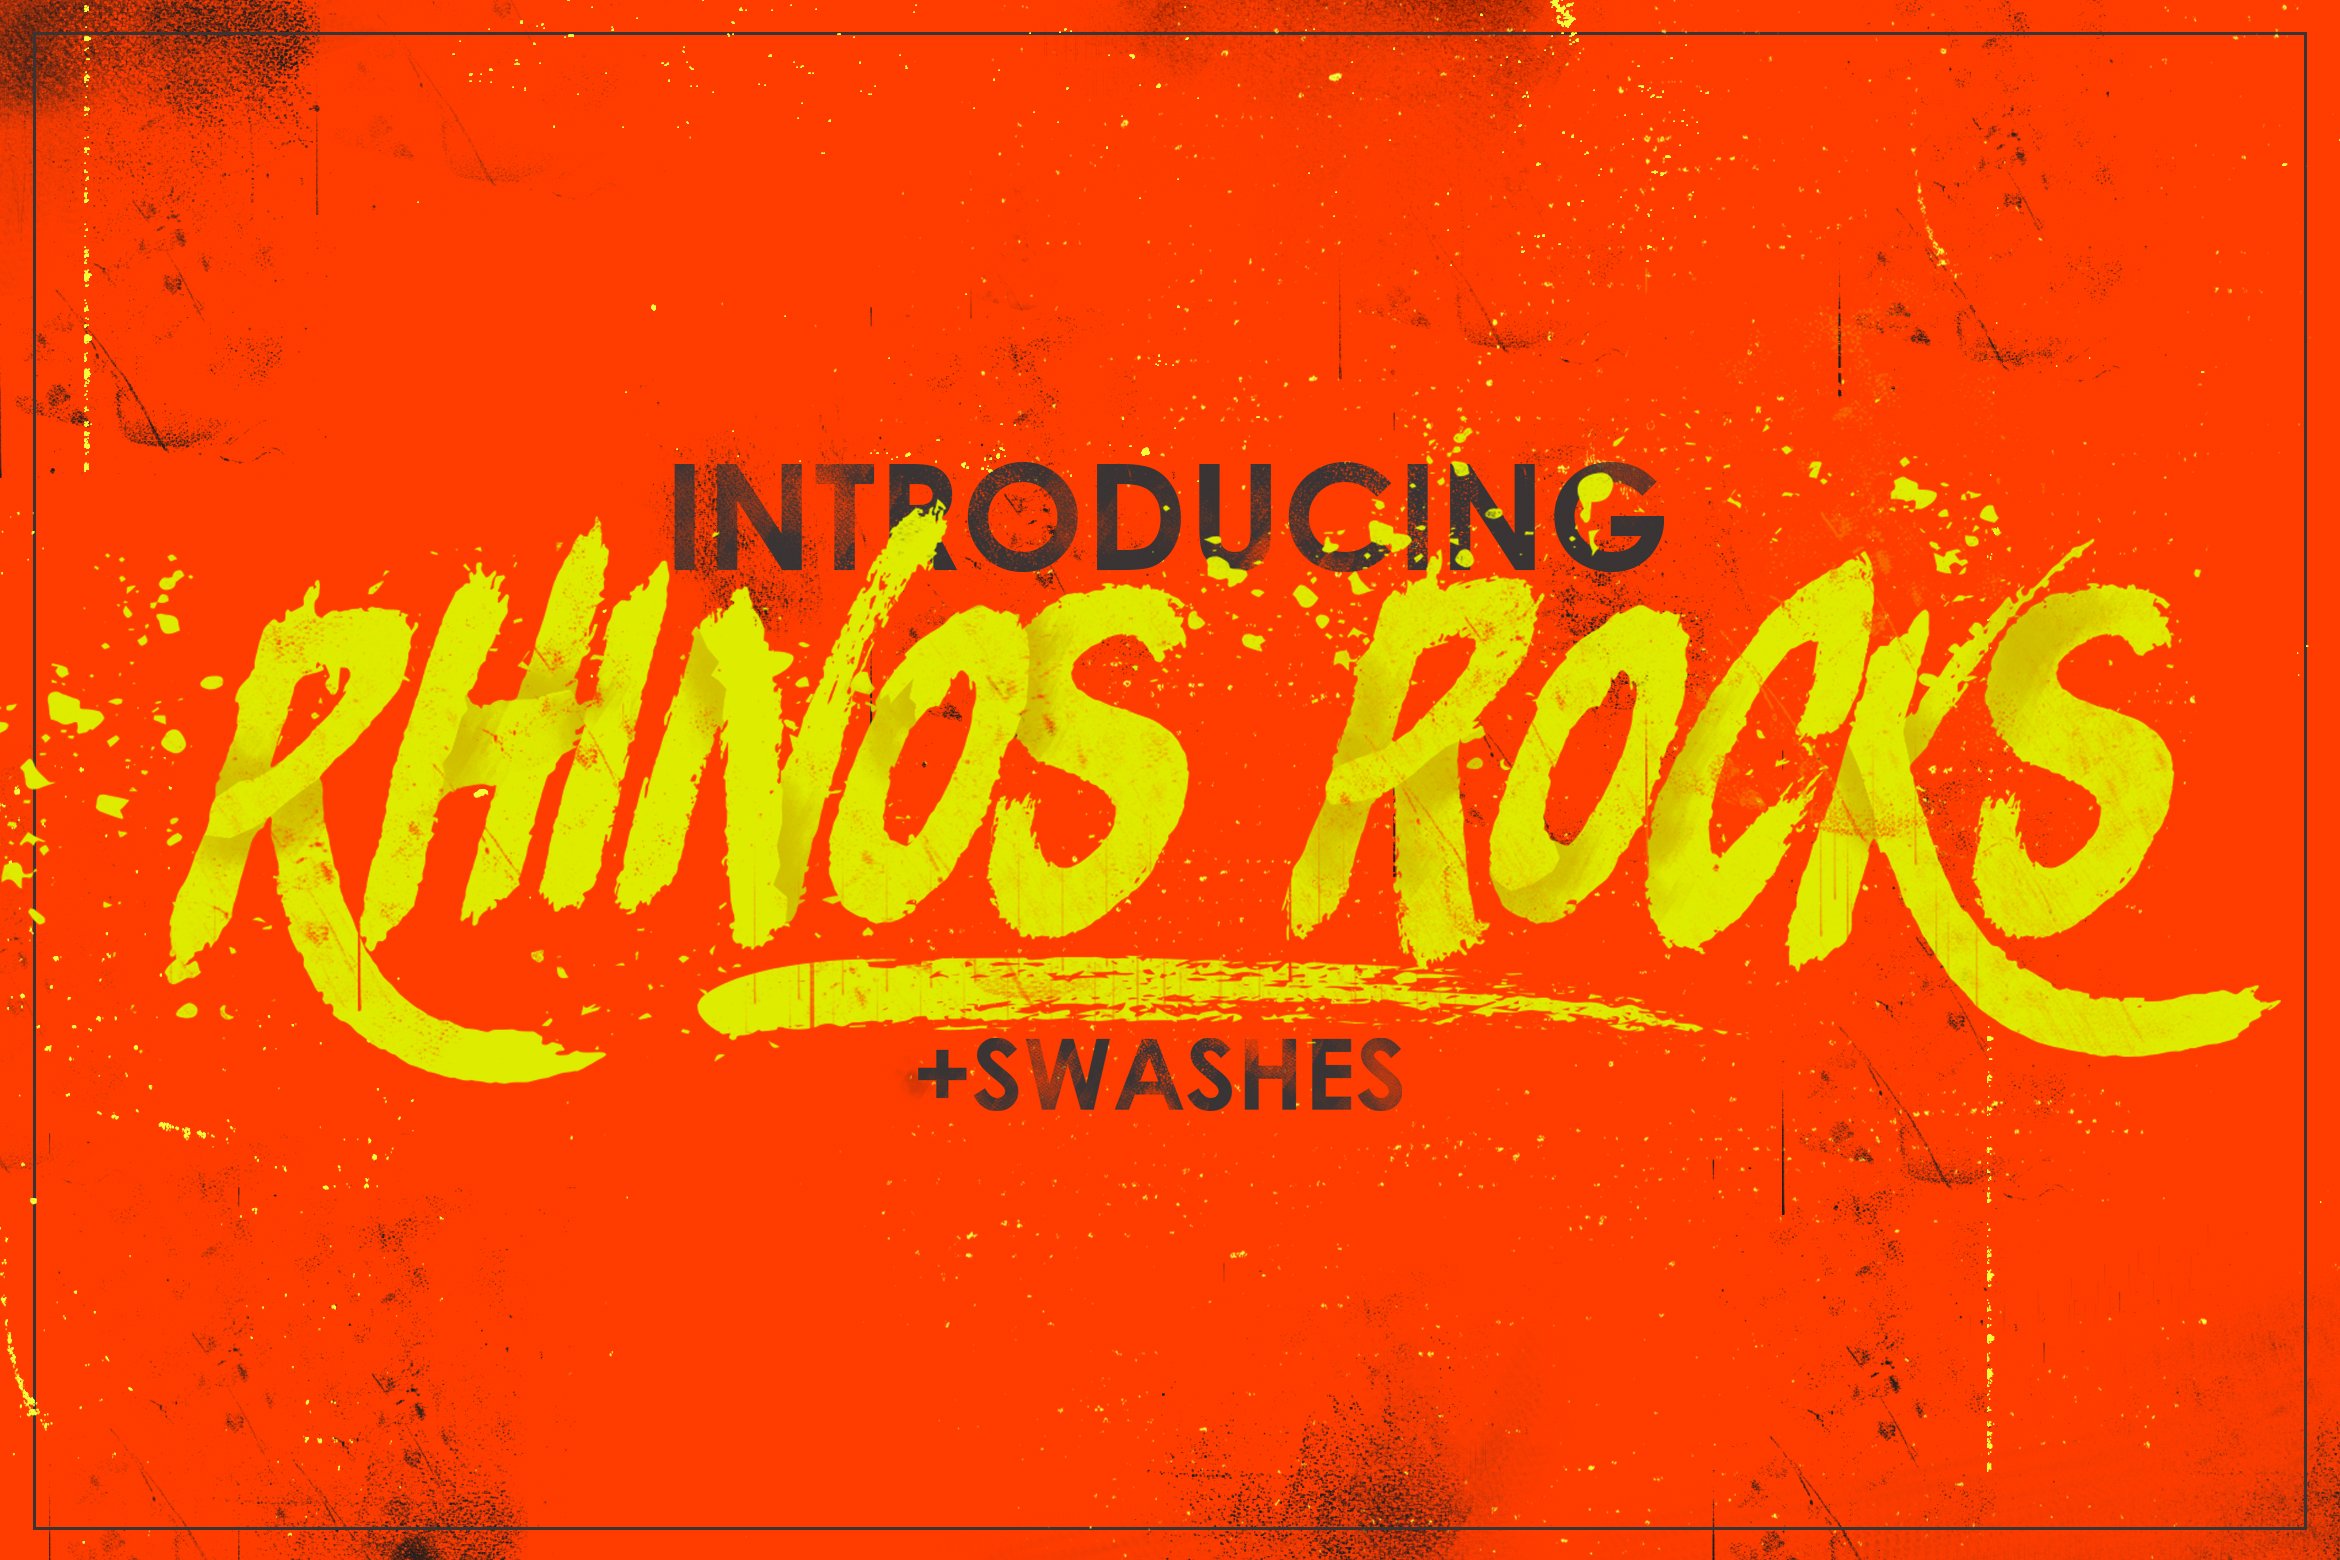 疯狂的字体 Rhinos Rocks Swashes #1